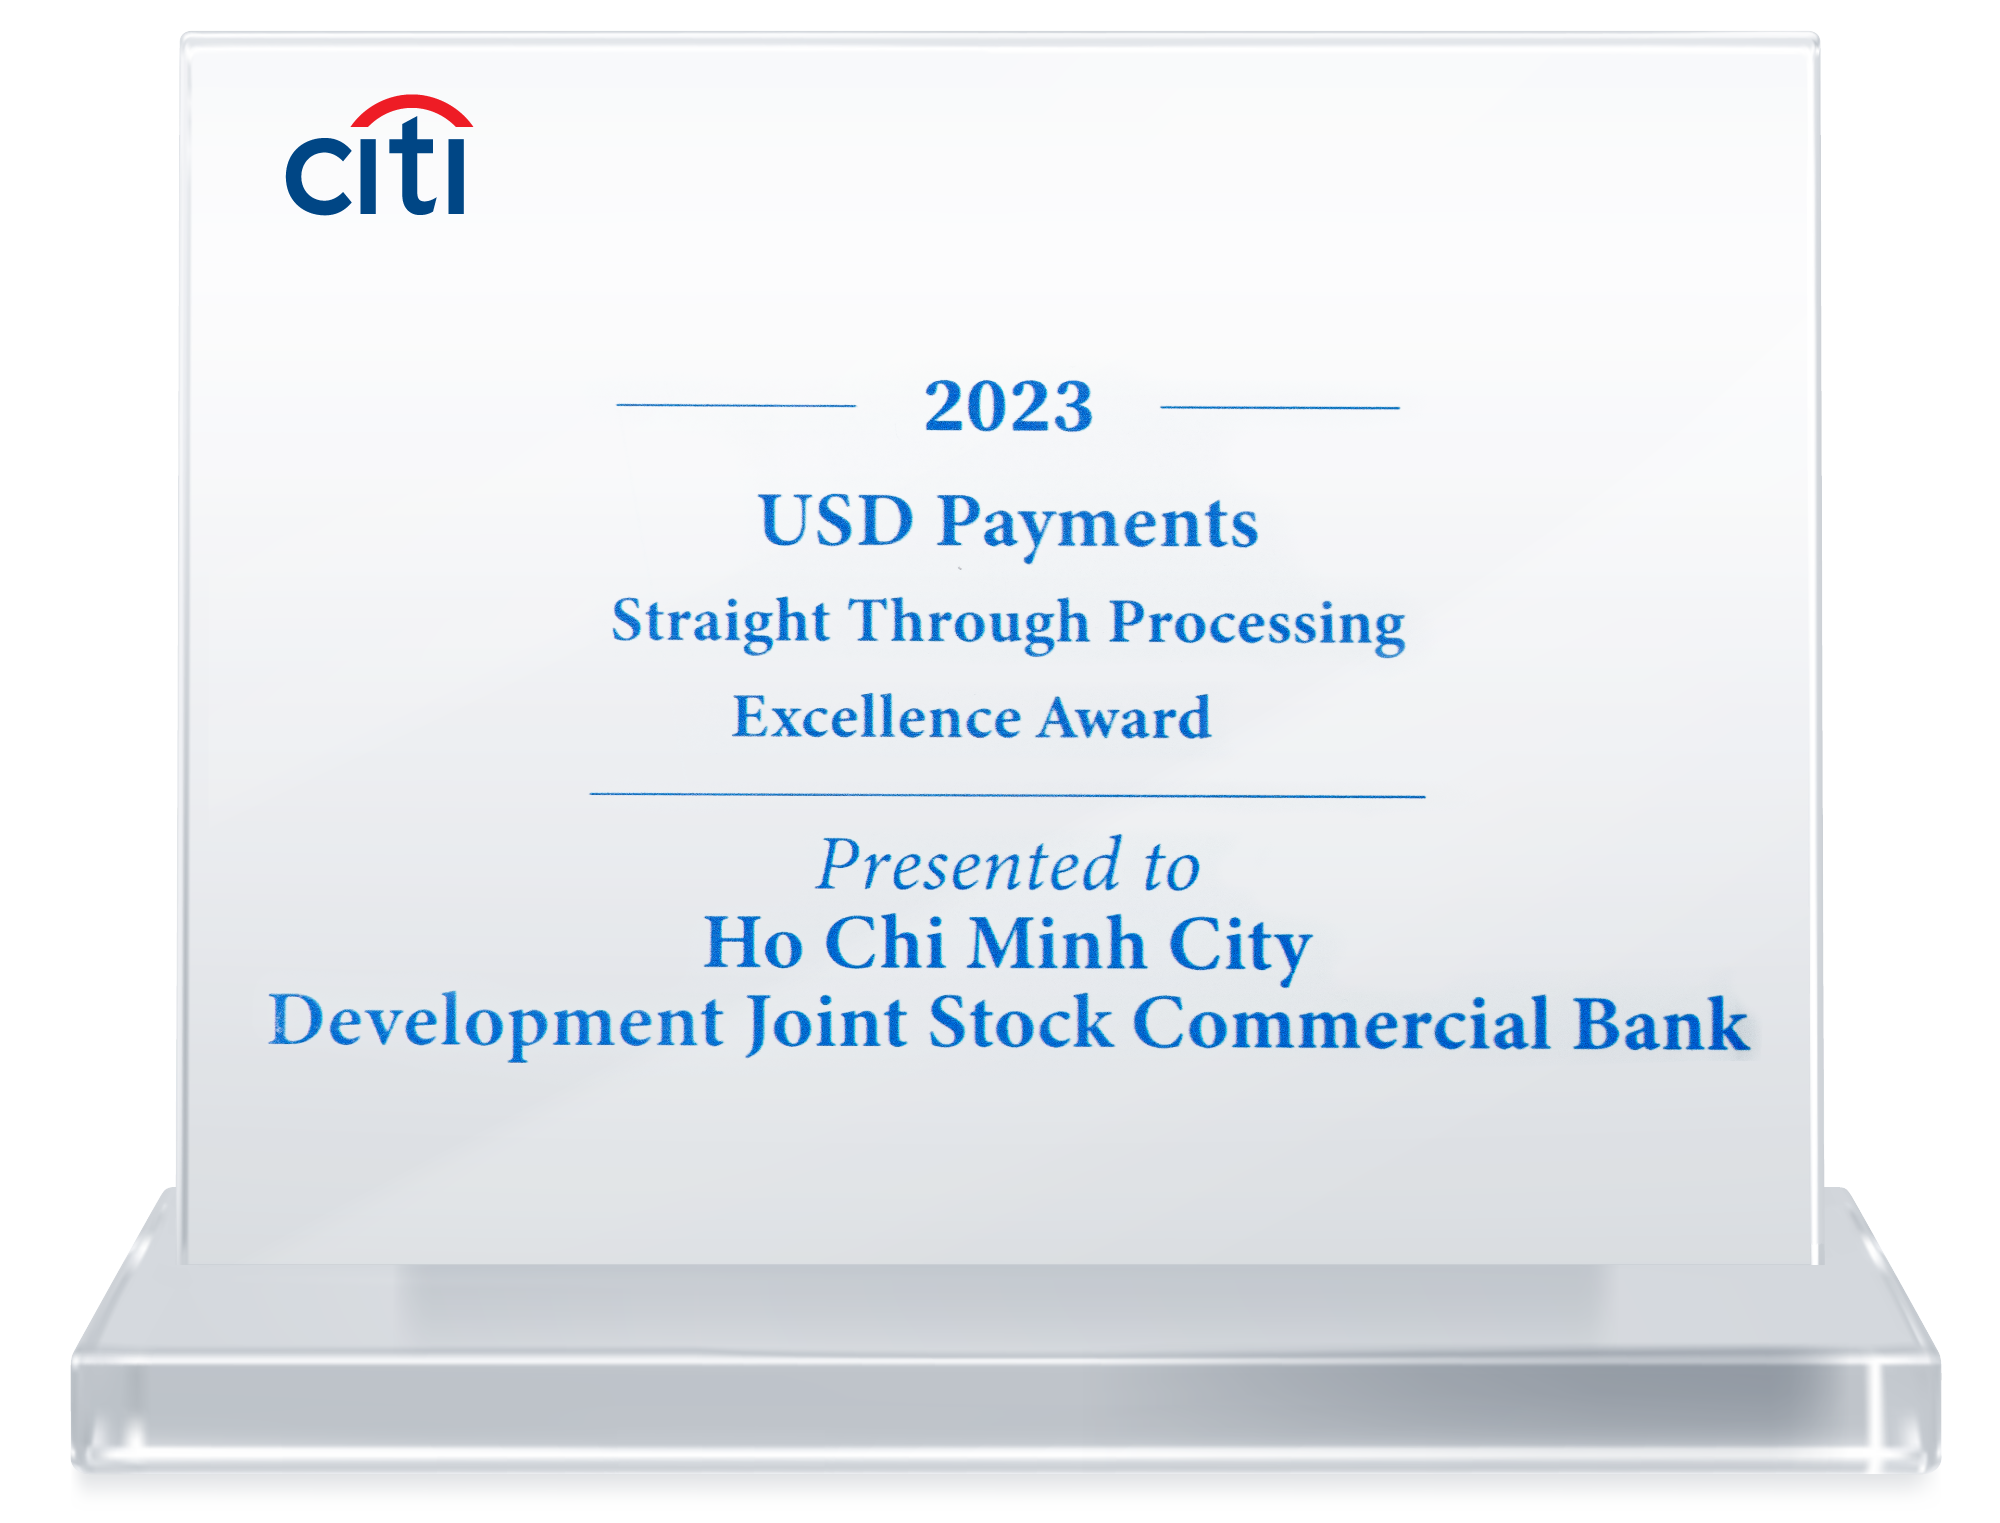 HDBank nhận giải thưởng thanh toán quốc tế xuất sắc từ Citibank